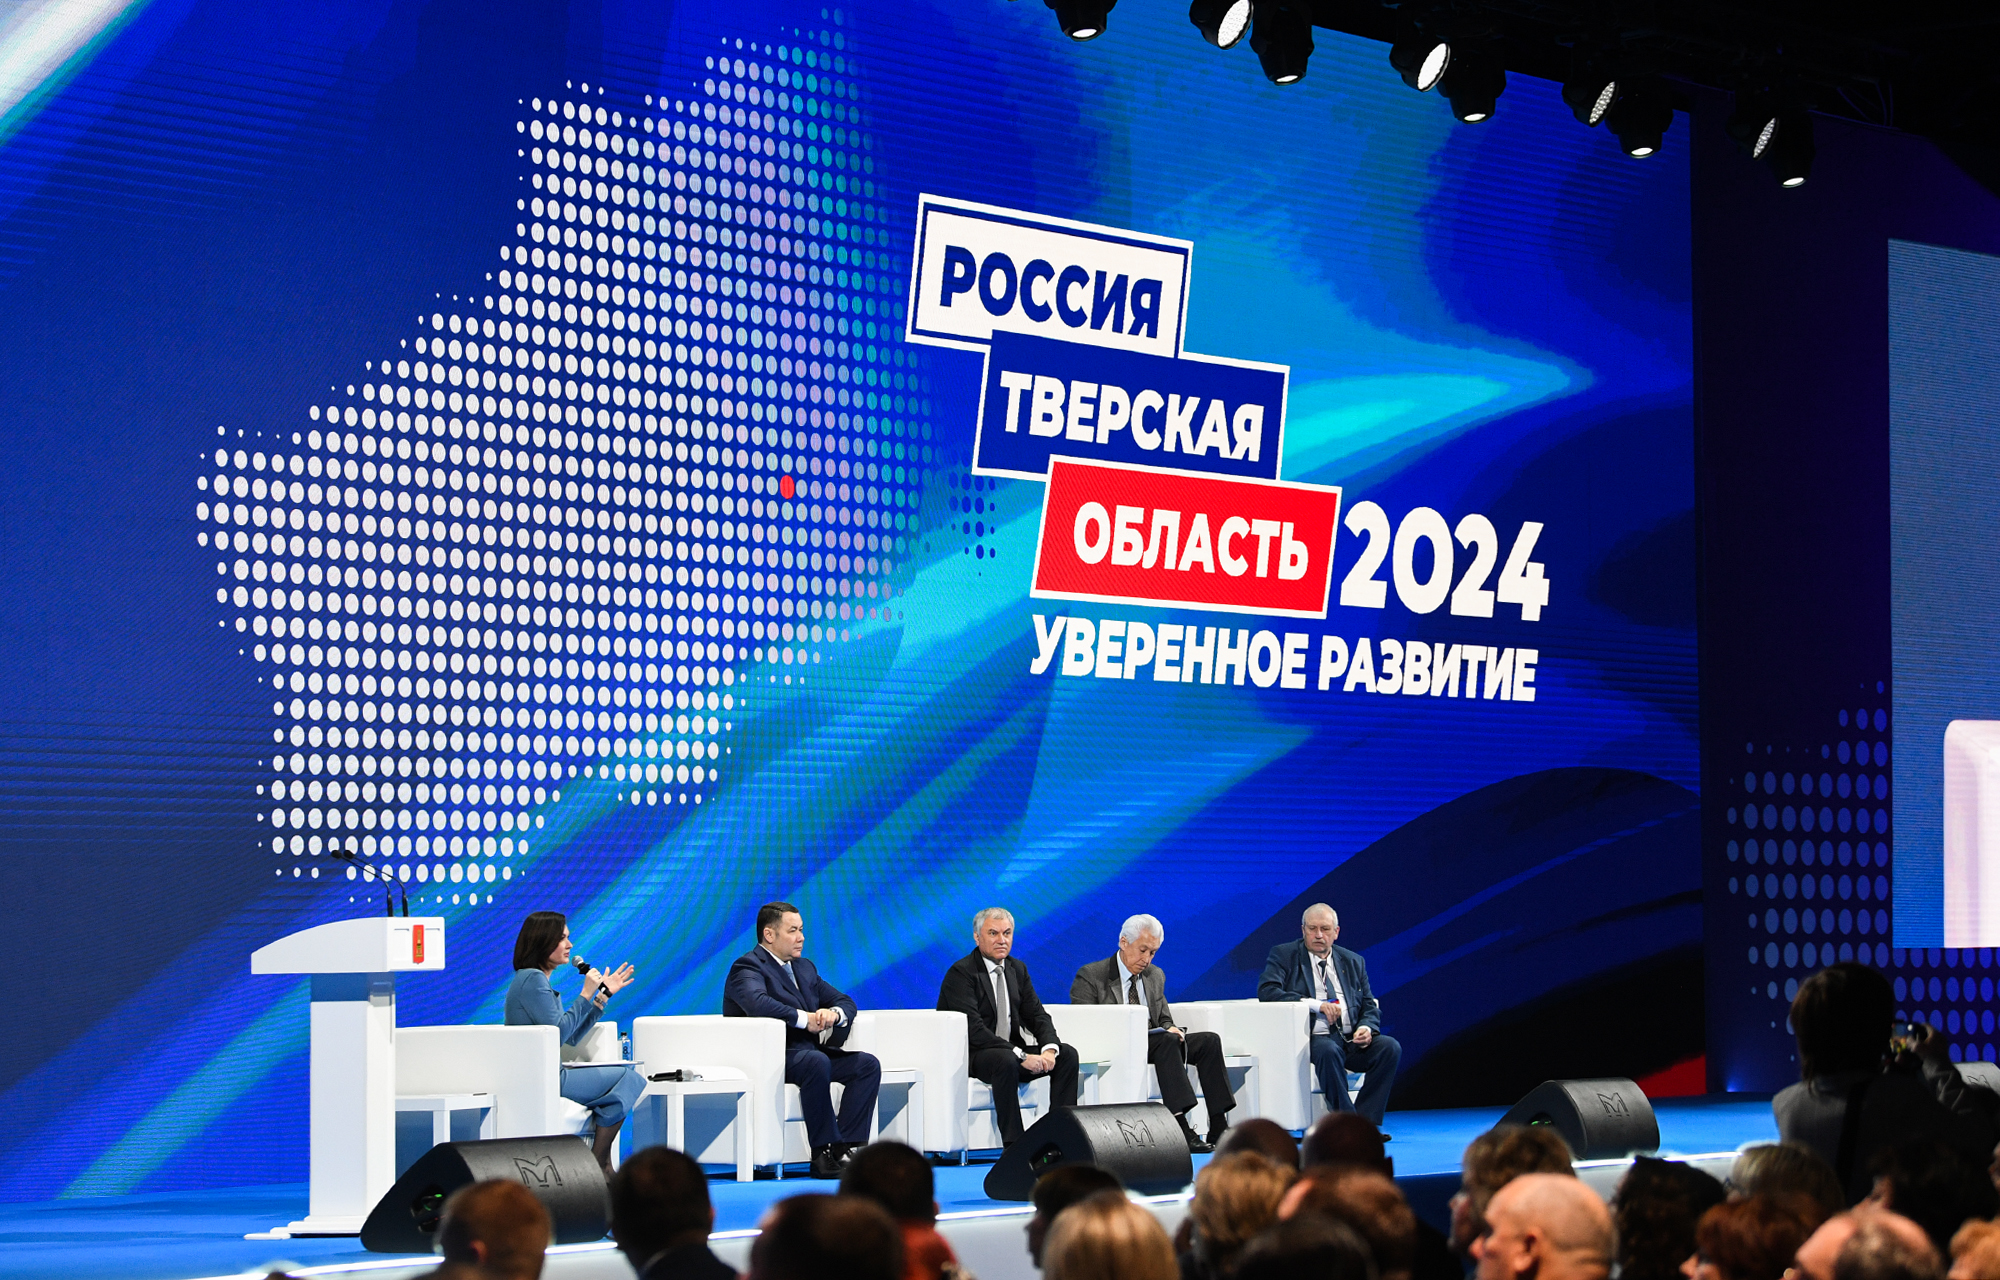 В Твери прошел форум муниципальных образований «Тверская область 2024. Уверенное развитие»